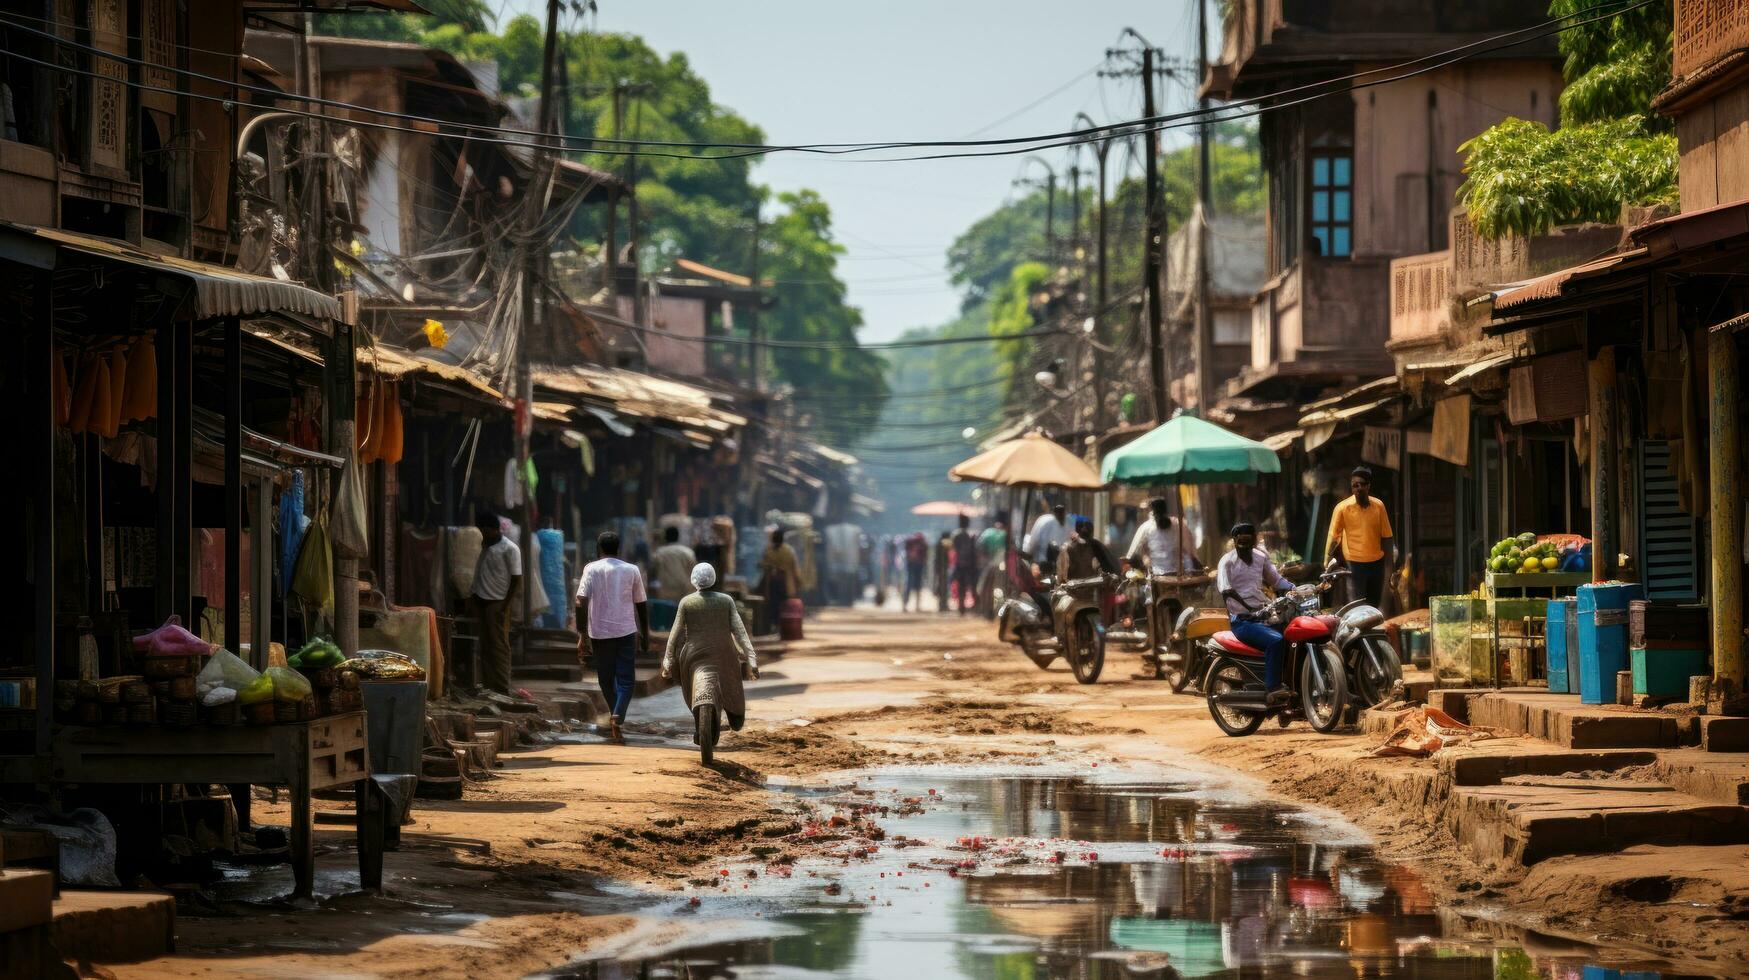 Stadt indisch Markt Bhopal, madhya Pradesch, Indien. foto